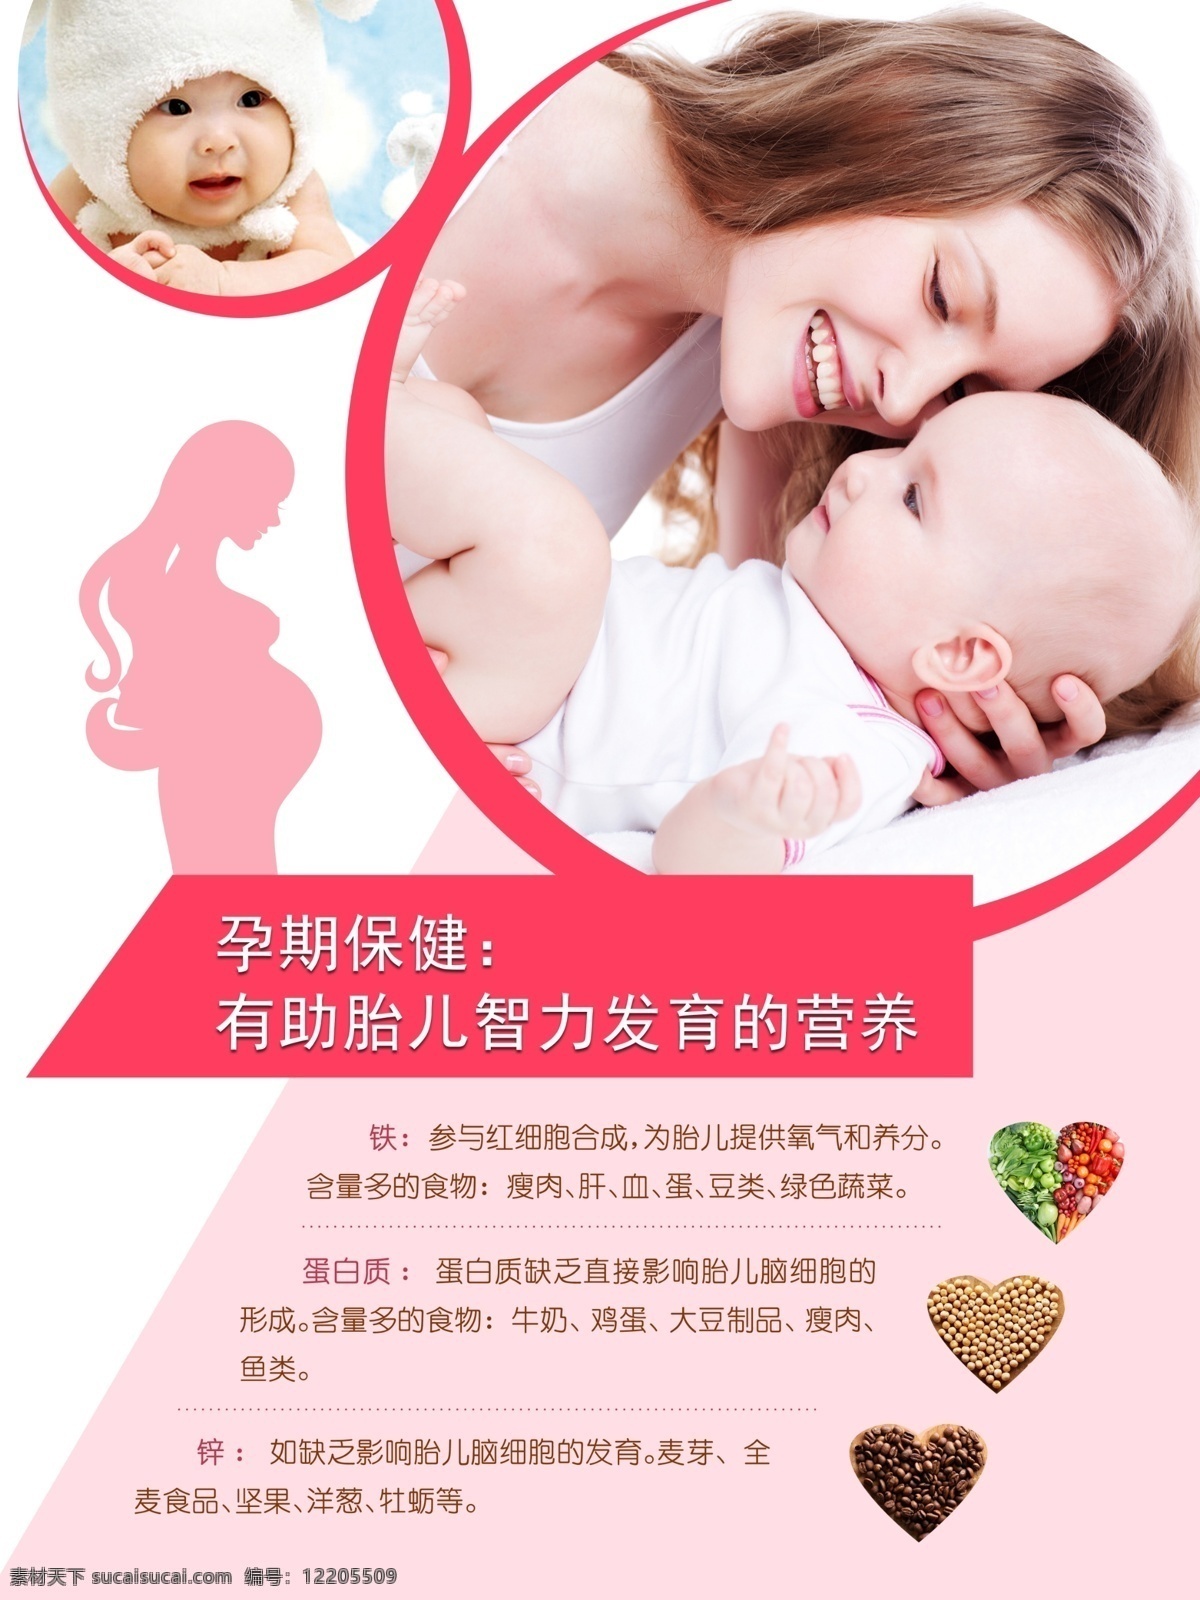 孕妇 休息室 图版 产后保健 孕妇图版 母婴图版 产后知识 孕妇保健 分层